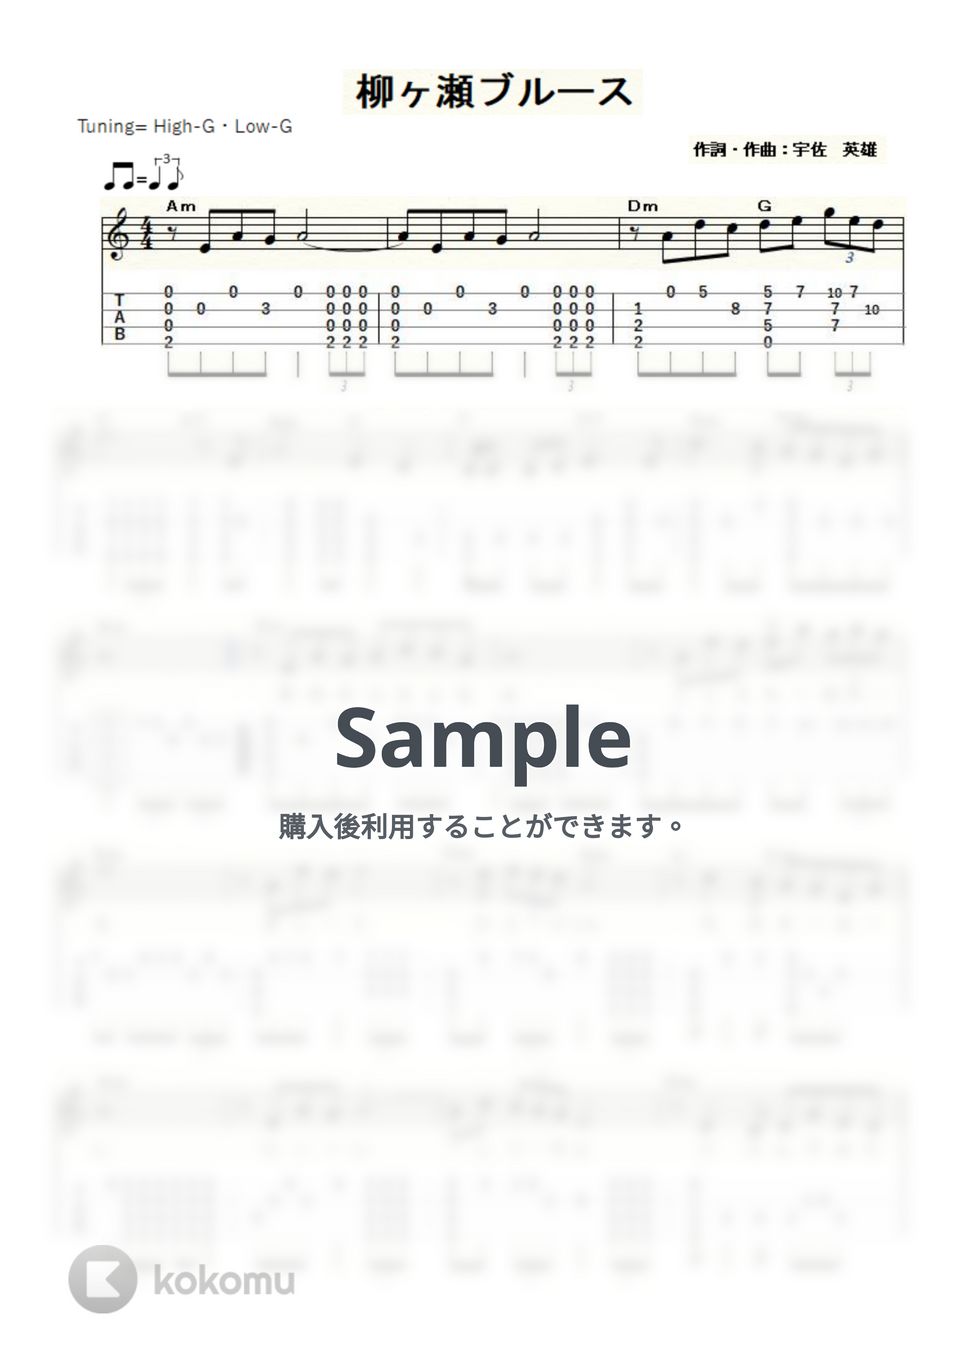 美川憲一 - 柳ヶ瀬ブルース (ｳｸﾚﾚｿﾛ / High-G・Low-G / 中級) by ukulelepapa